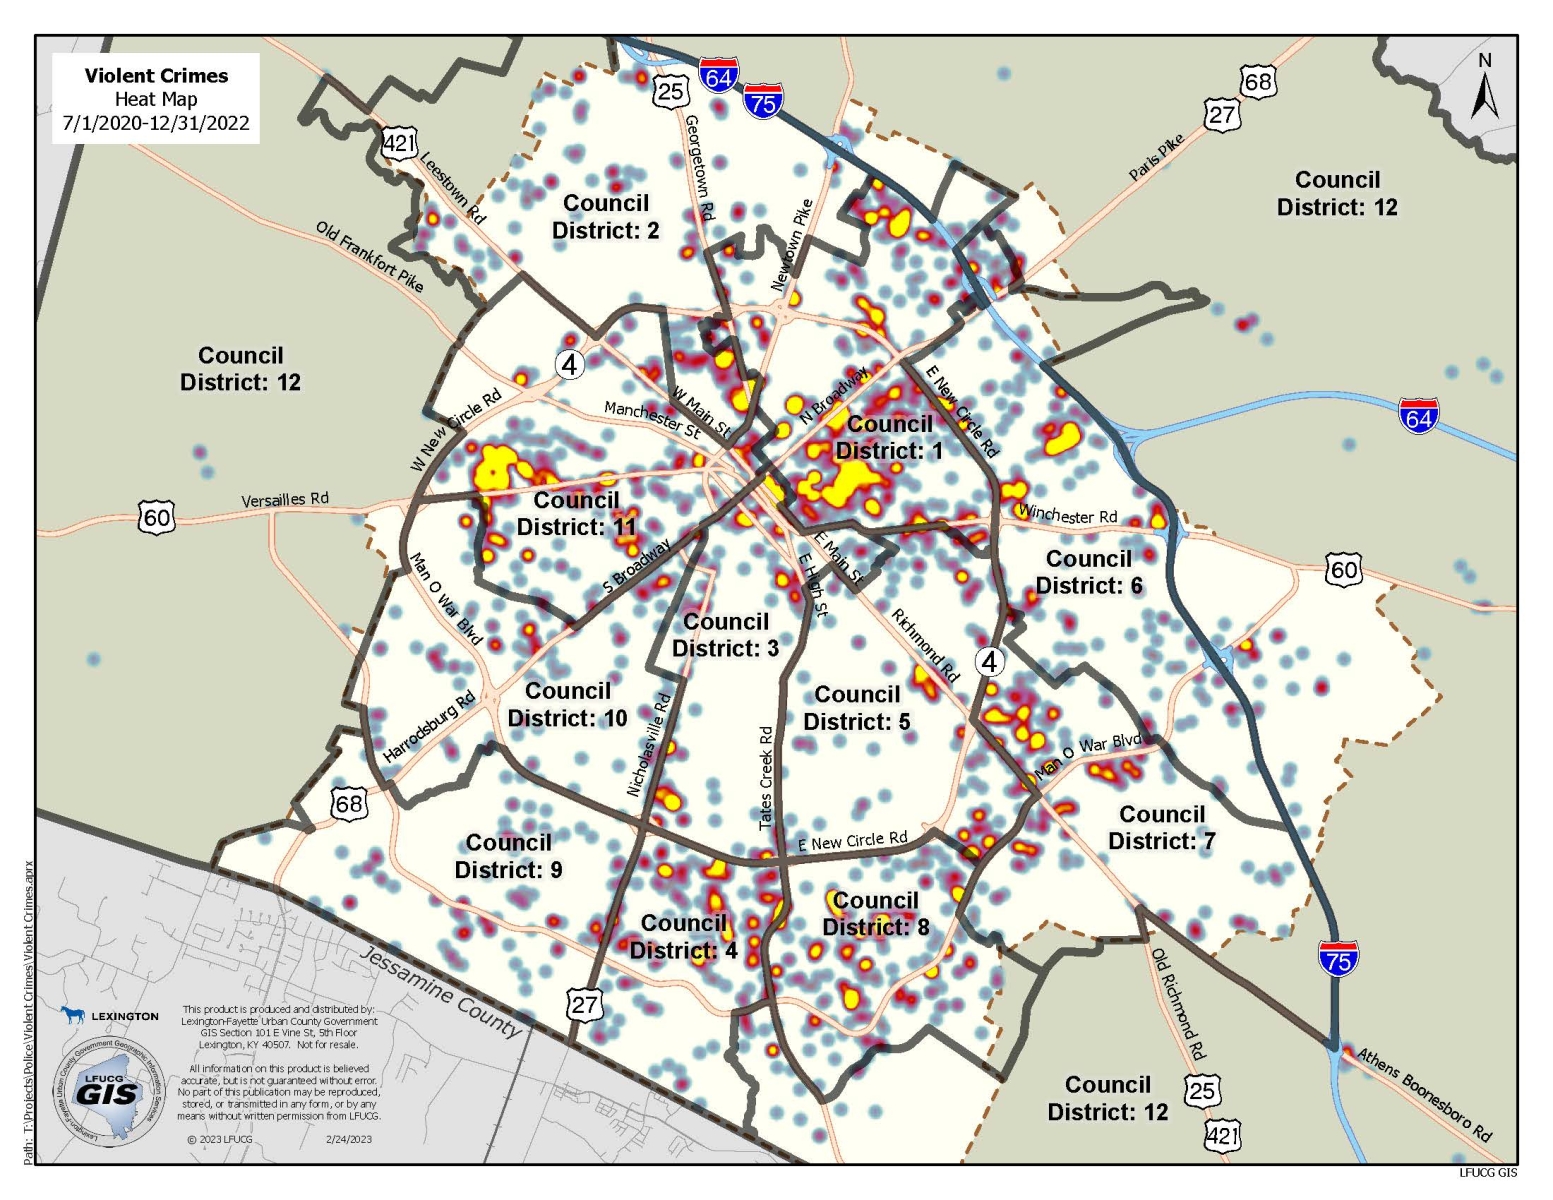 Violent Crime Heat Map by Council District